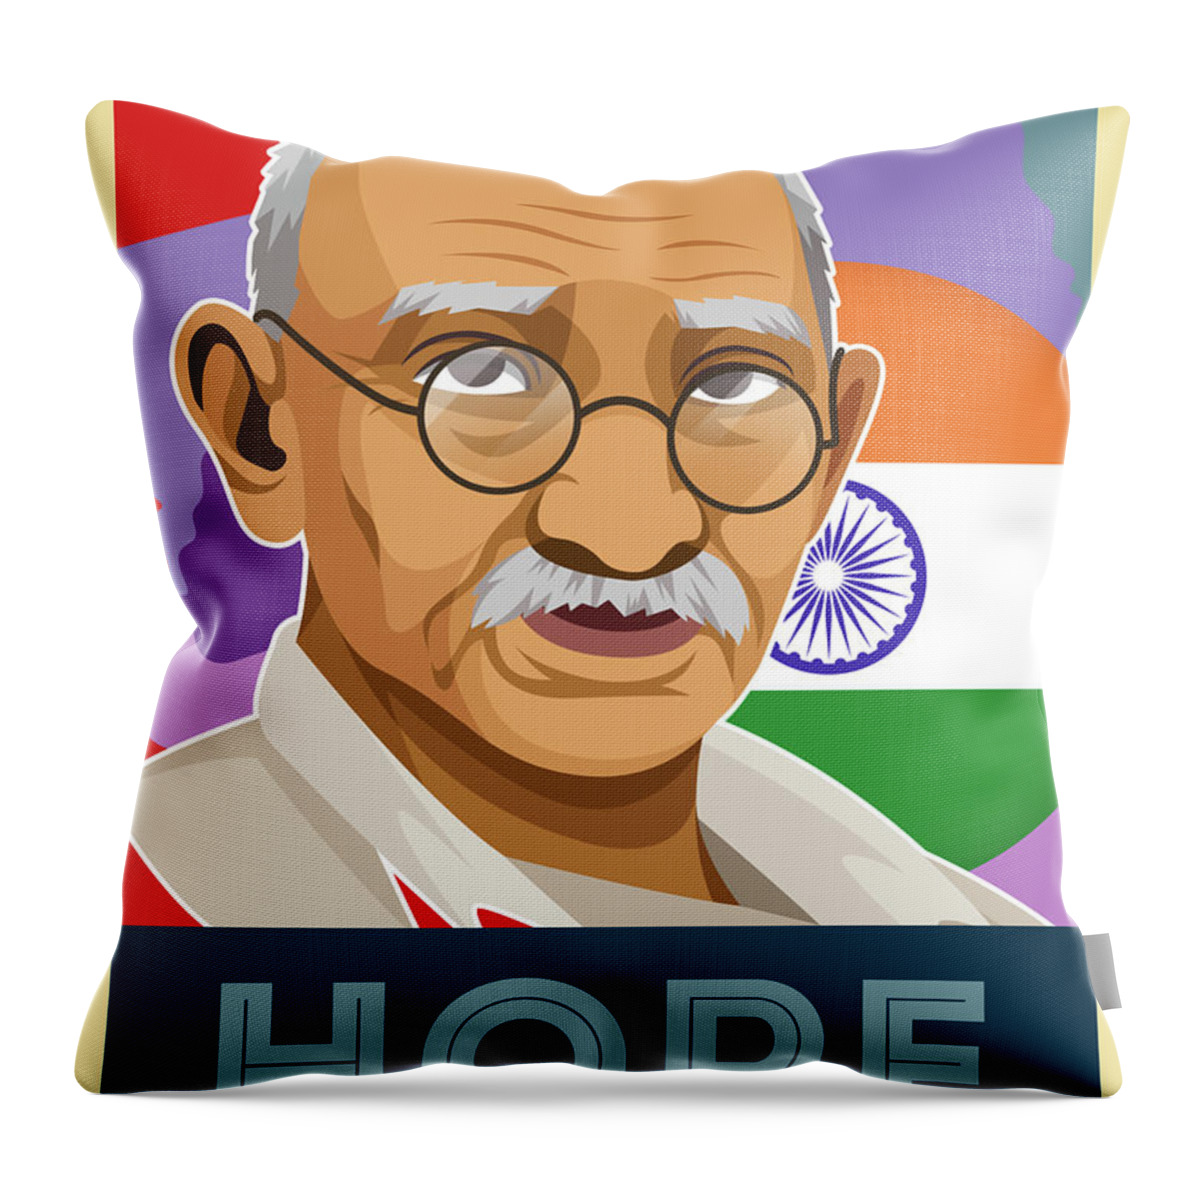 Hope Poster Mahatma Gandhi V2 Paint Throw Pillow featuring the painting Hope Poster Mahatma Gandhi v2 by Celestial Images